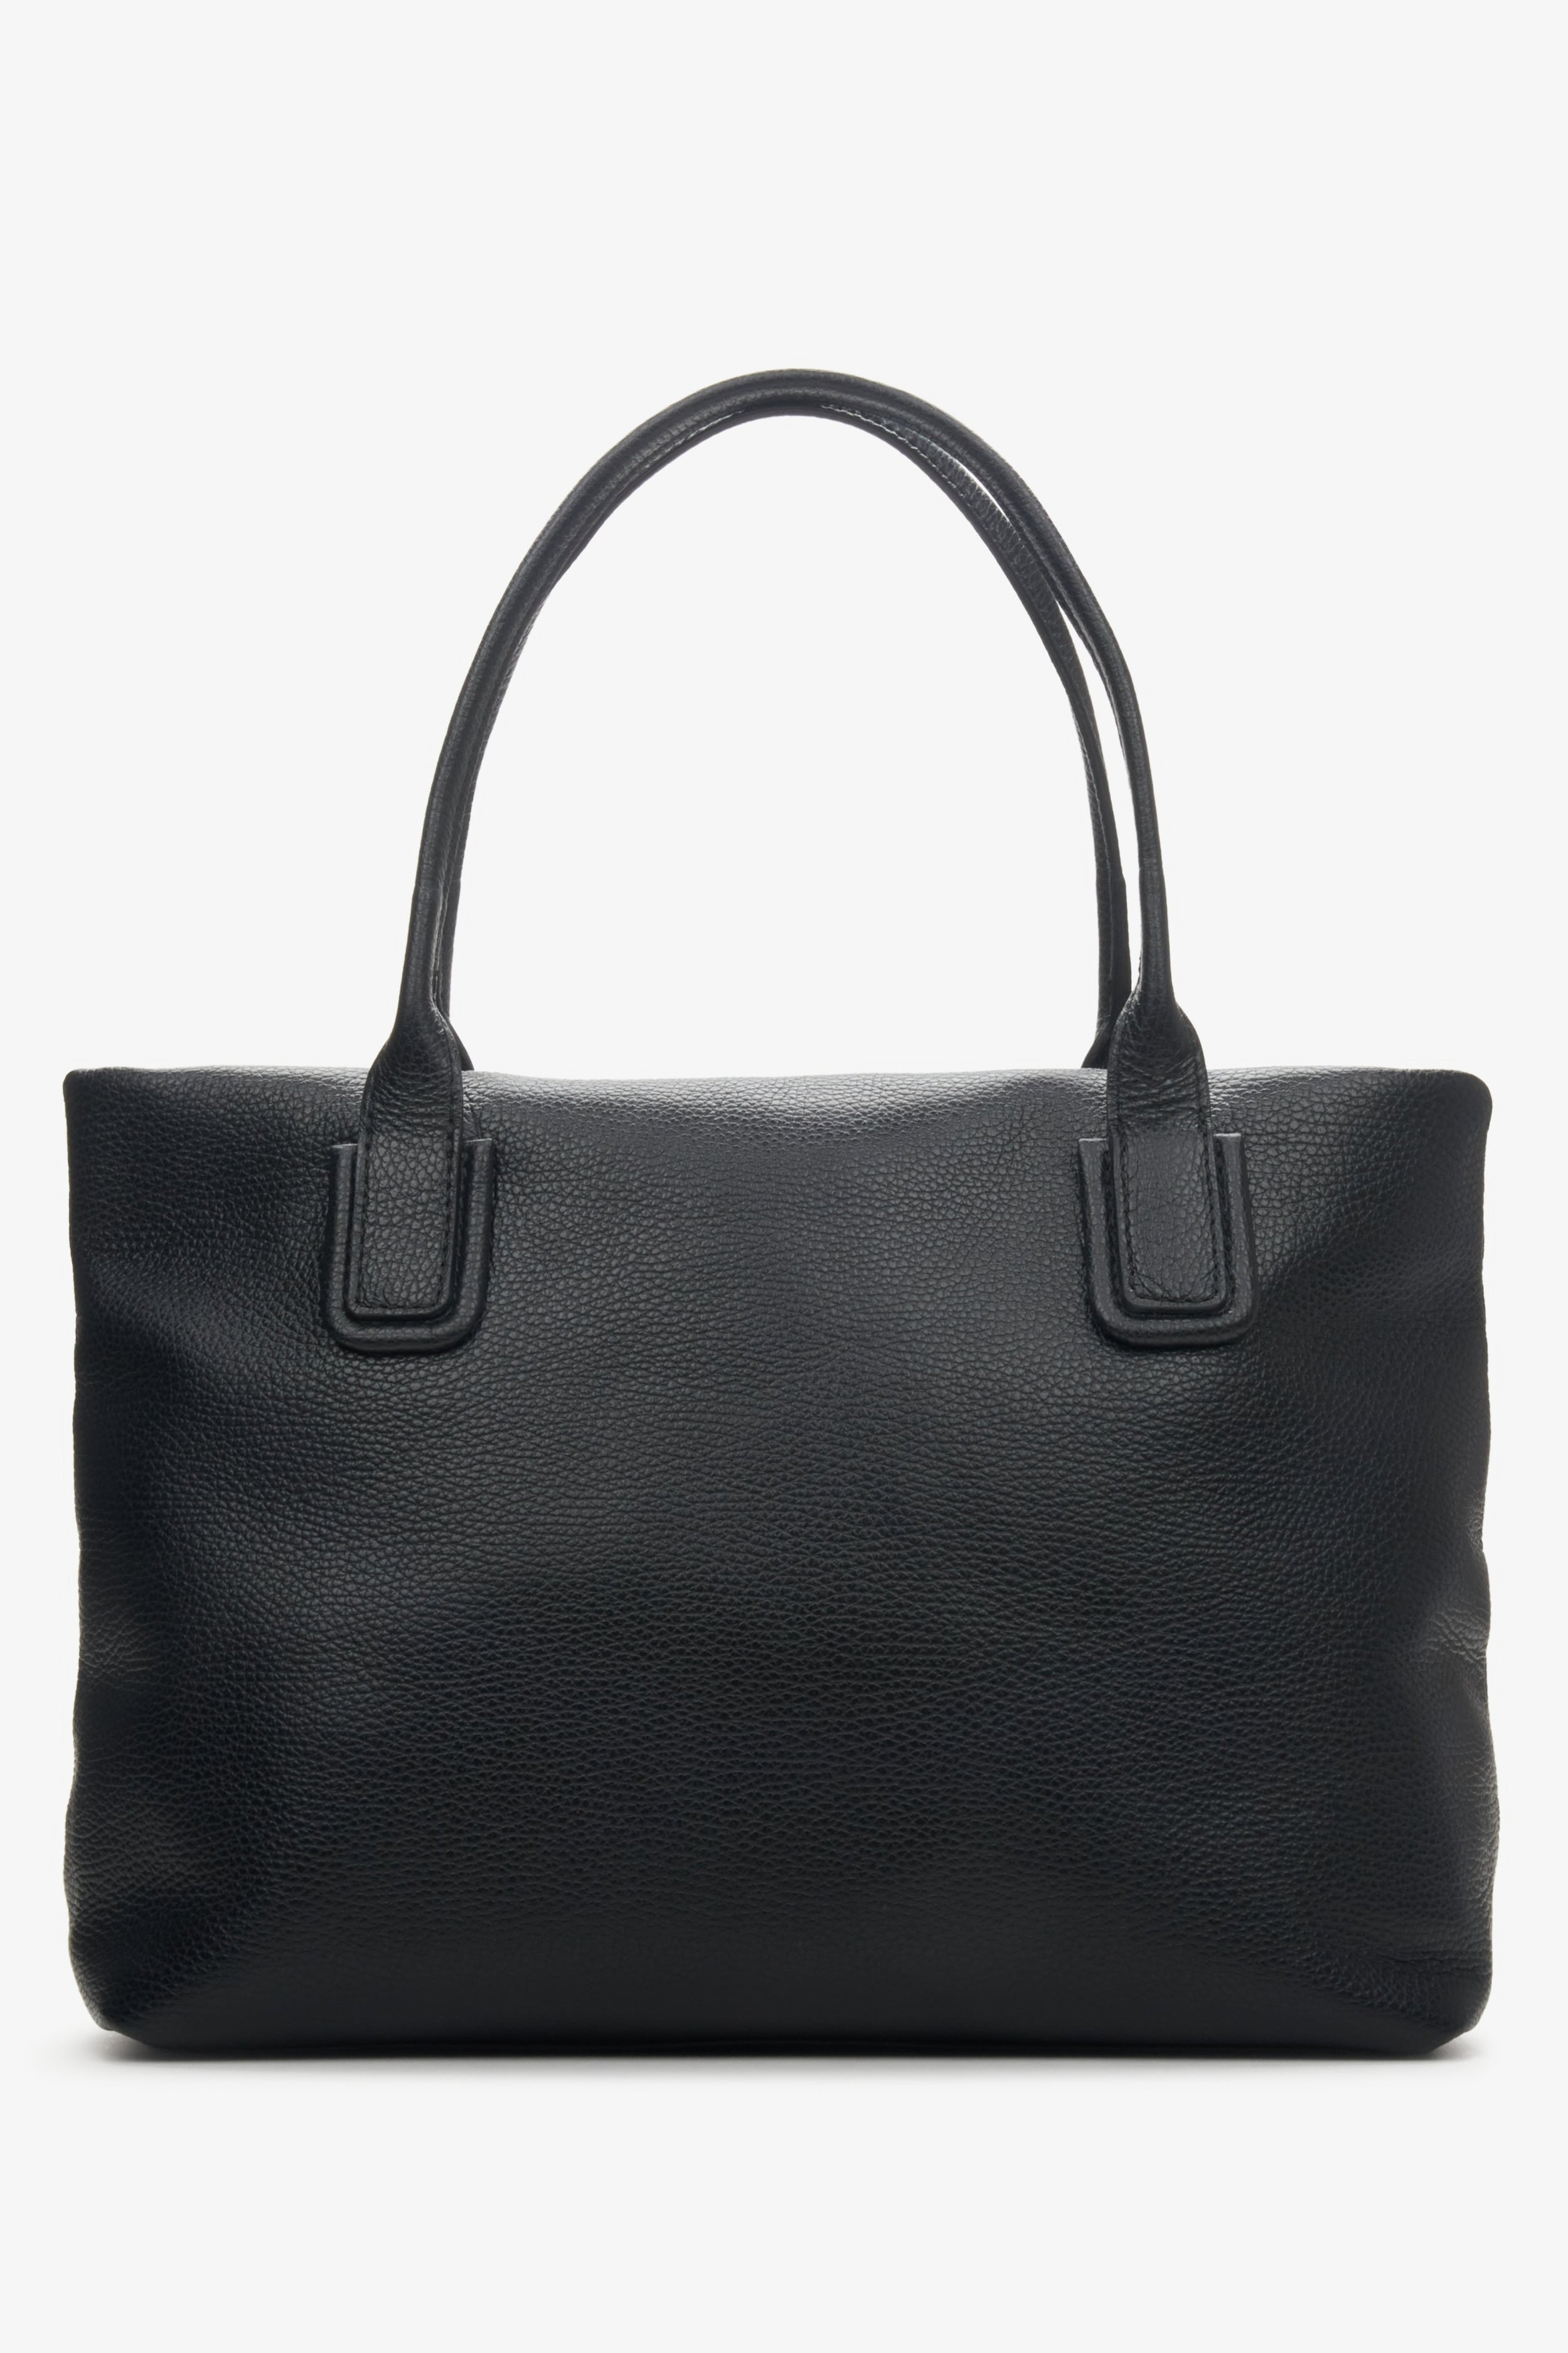 Estro: Czarna torebka damska typu shopper z włoskiej skóry naturalnej